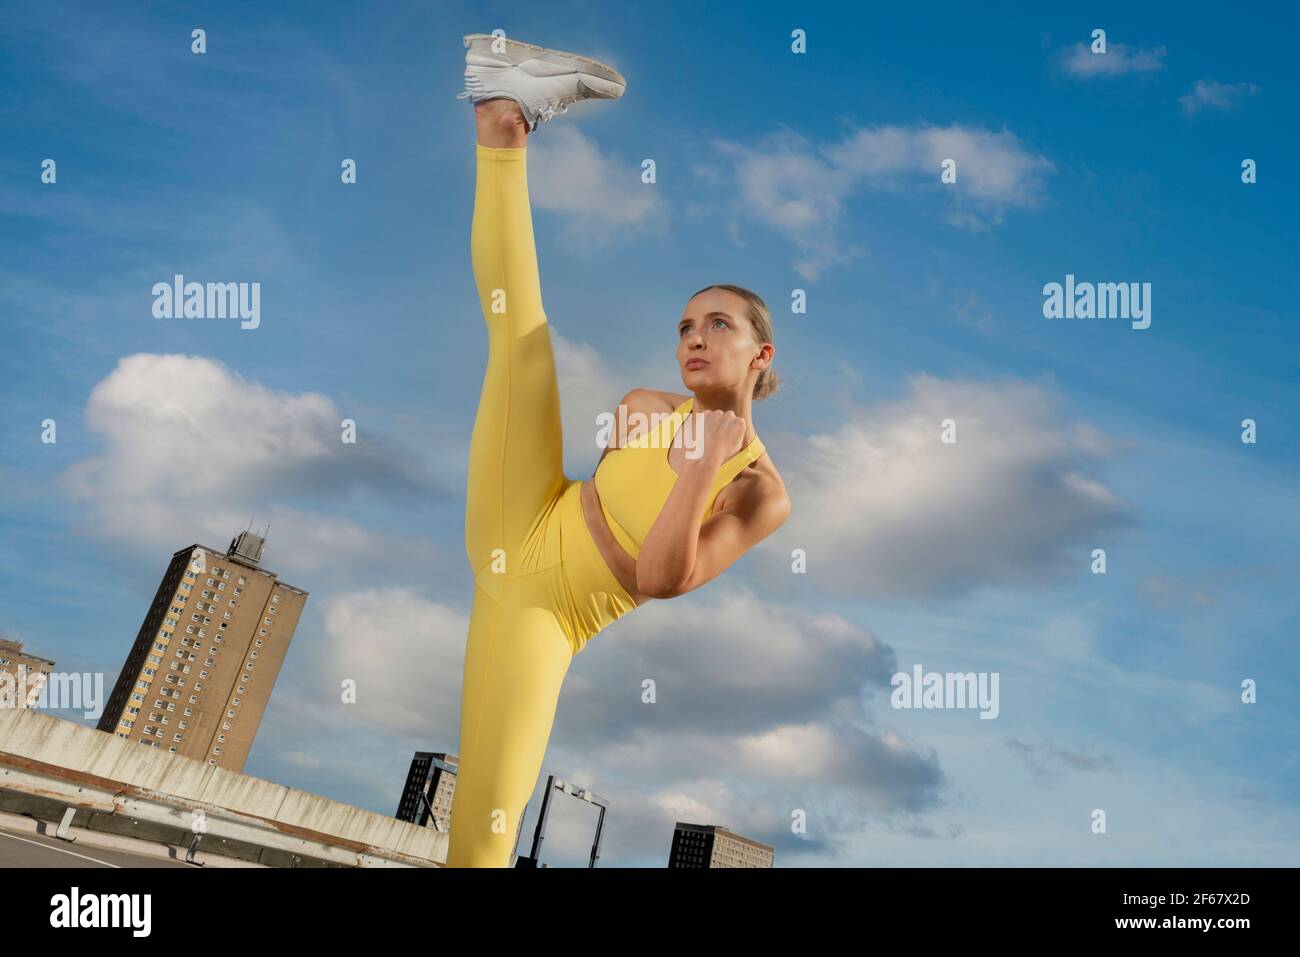 Attraktive sportliche Frau trägt gelbe activewear üben High-Kick-Übung draußen in einer städtischen Umgebung. Stockfoto